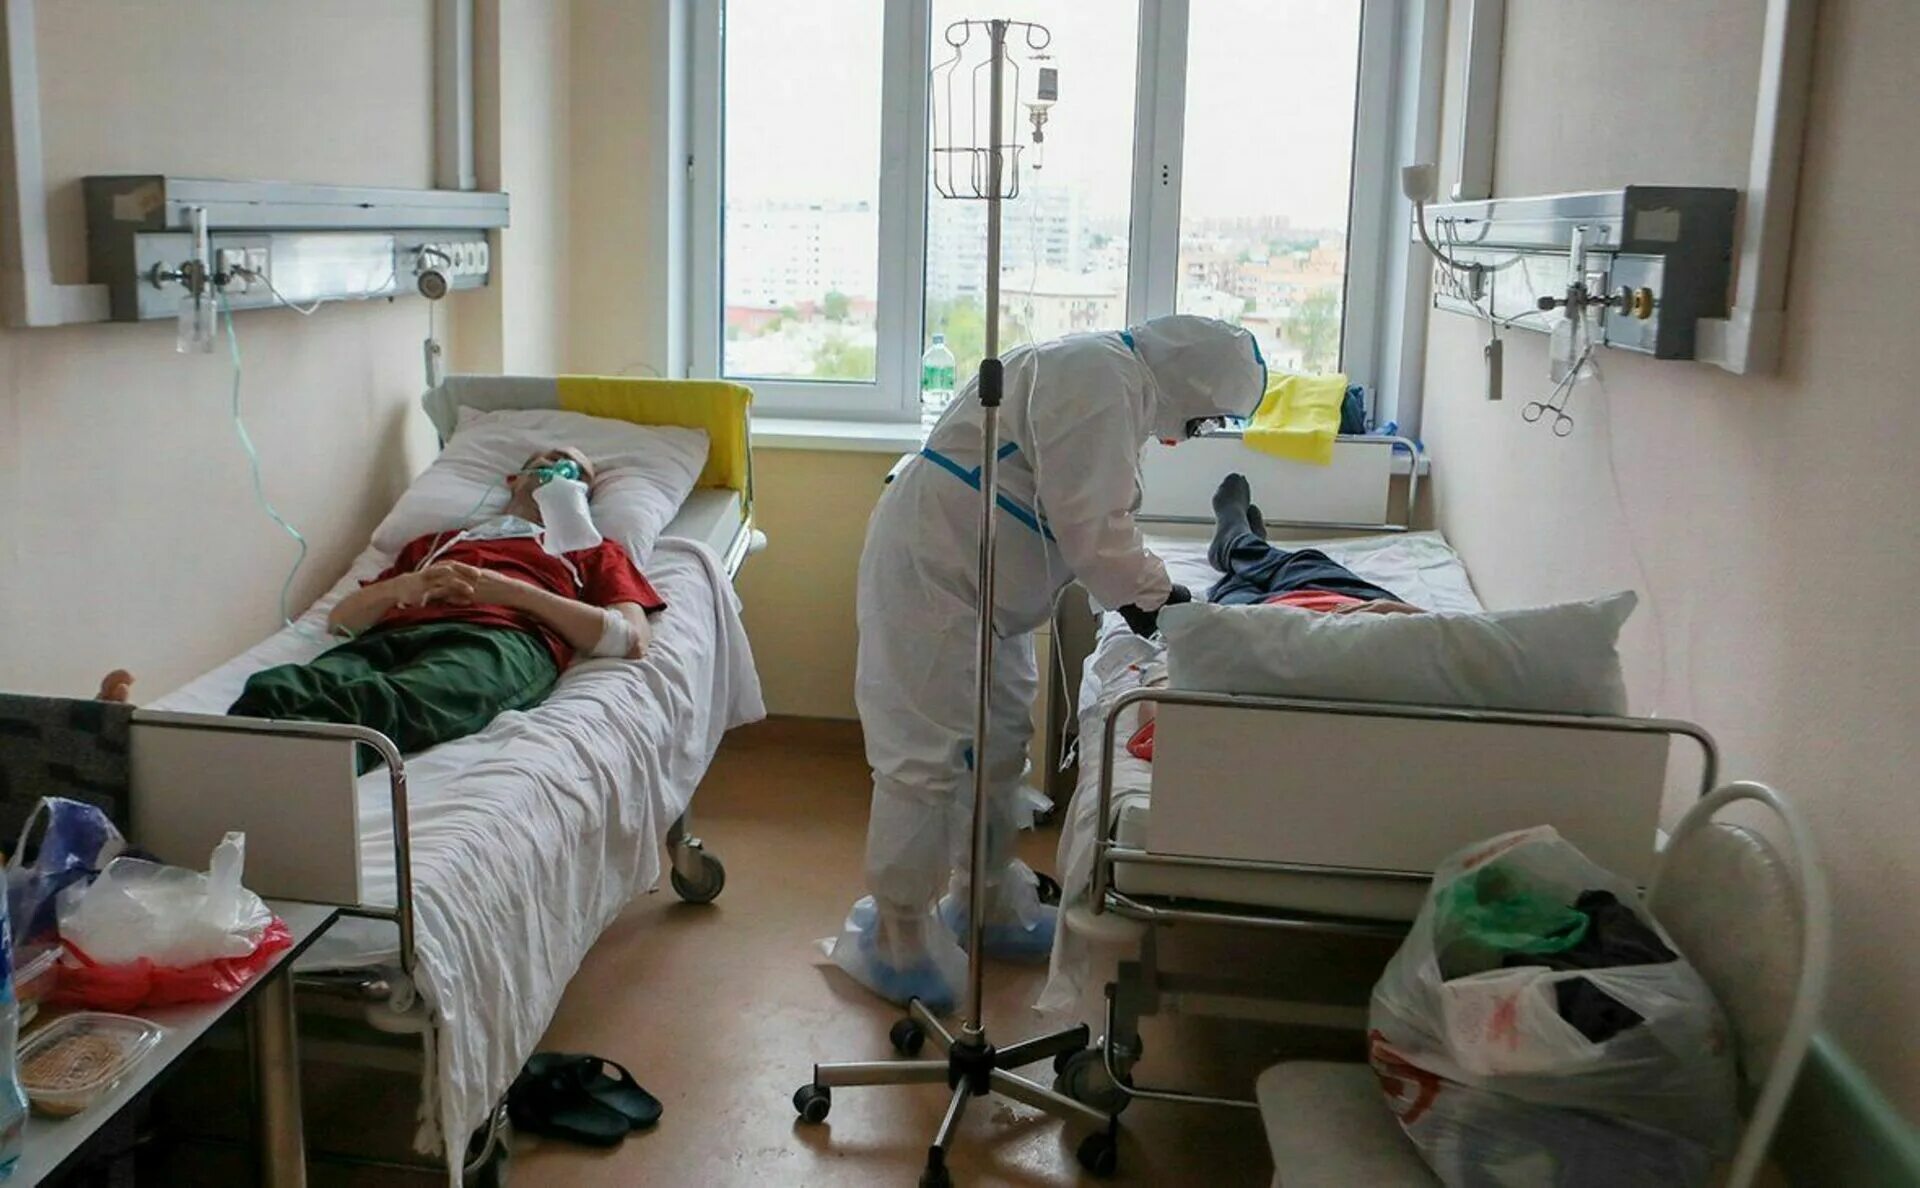 Заболевшие ковидом в москве. Госпитализация инфекционных больных. Палаты с больными людьми.